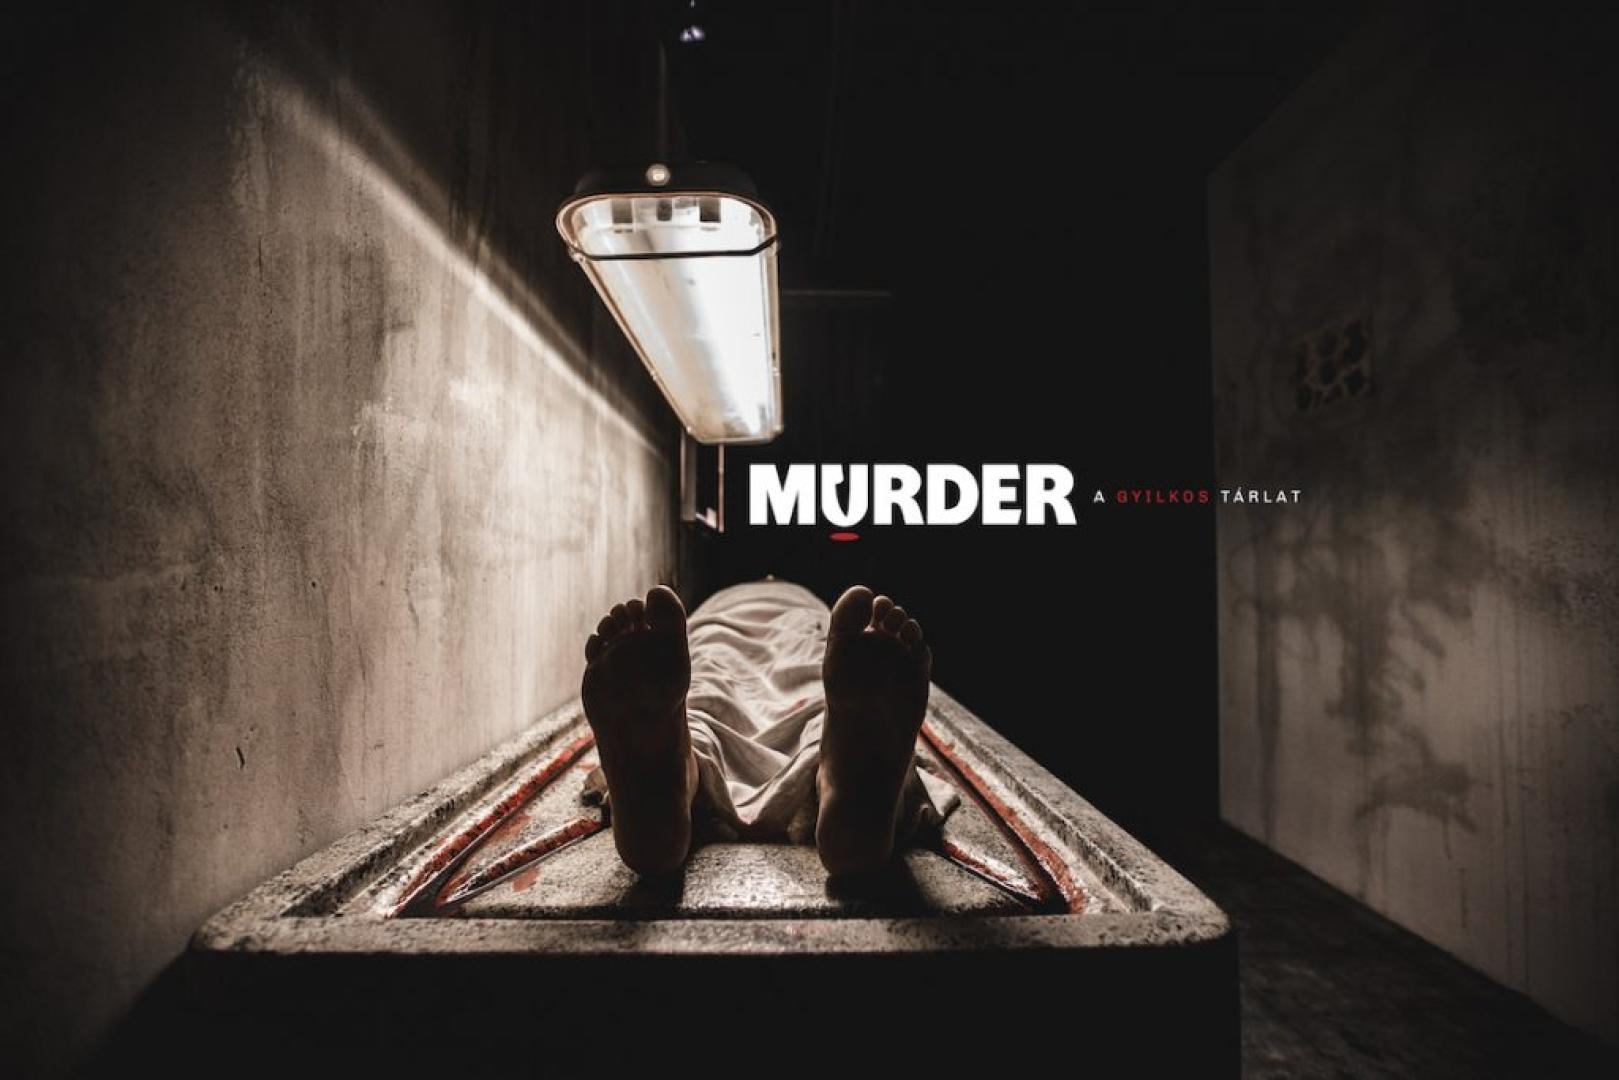 Élménybeszámoló: Murder - A gyilkos tárlat